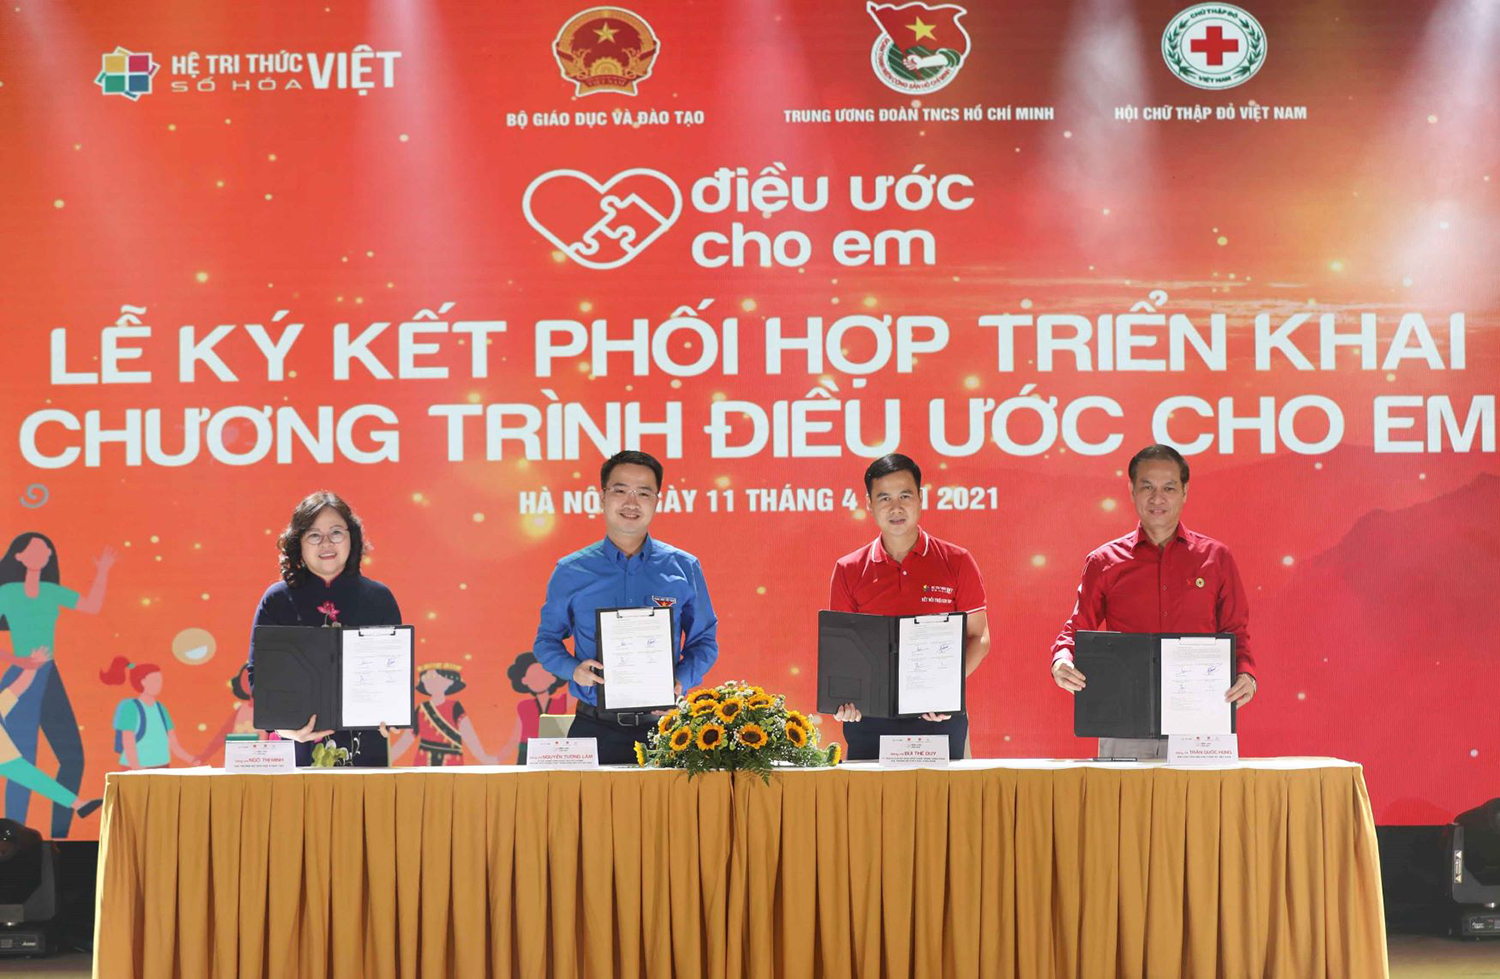 Đại diện Bộ GD&ĐT, Trung ương Đoàn TNCS Hồ Chí Minh, Hội Chữ thập đỏ Việt Nam và Đề án tri thức Việt số hóa ký kết phối hợp triển khai Chương trình'Điều ước cho em'.